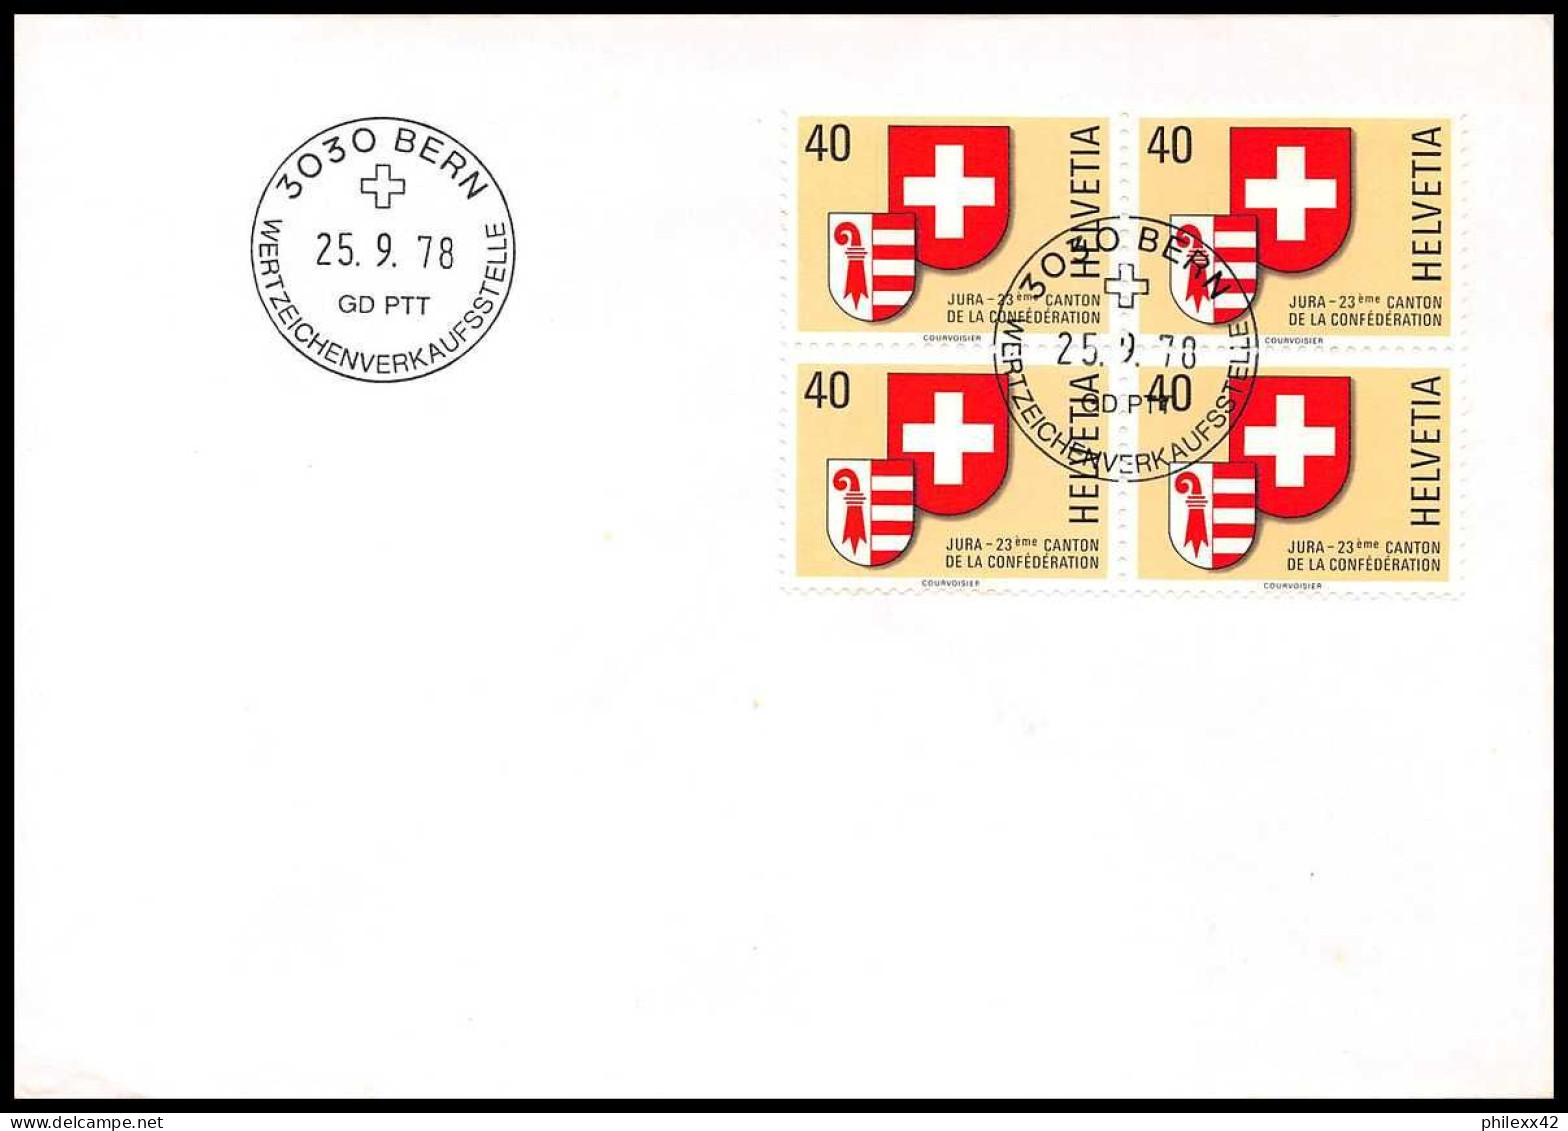 11437 bon lot de 95 FDC dont bloc recommandés lettre cover suisse helvetia 